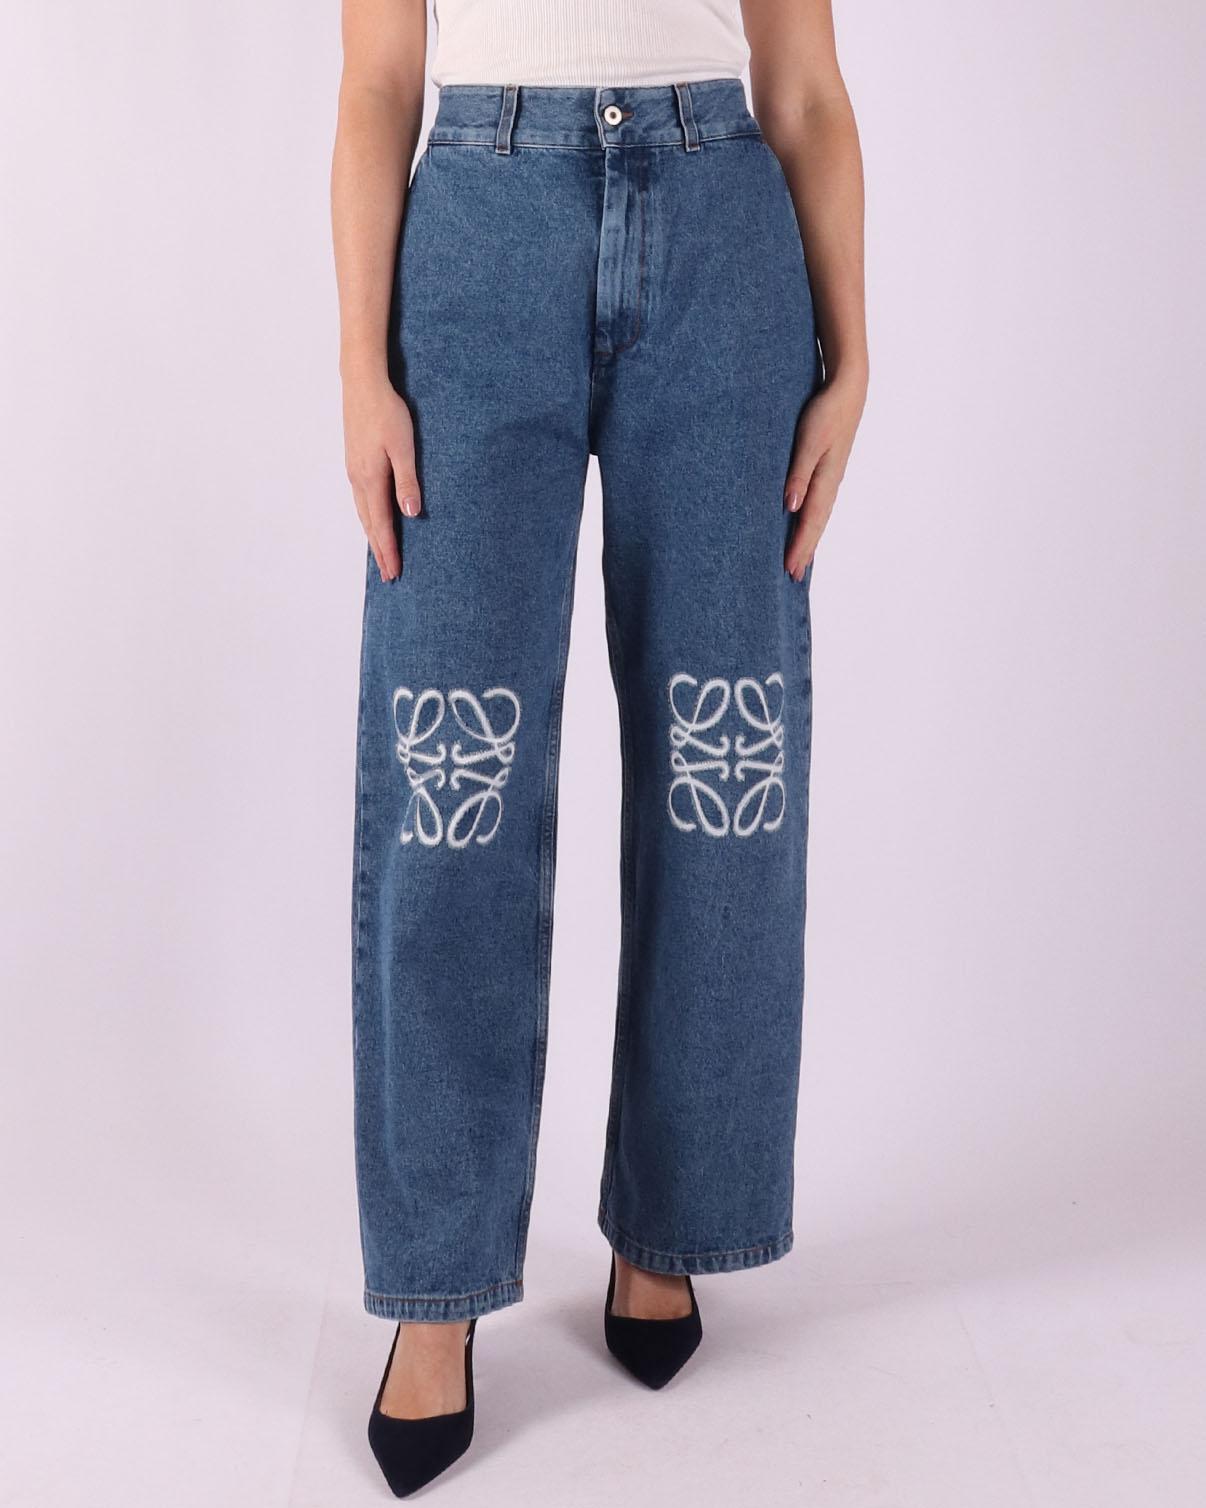 LOEWE Jeans met logo, in de kleur blauw, voor dames.